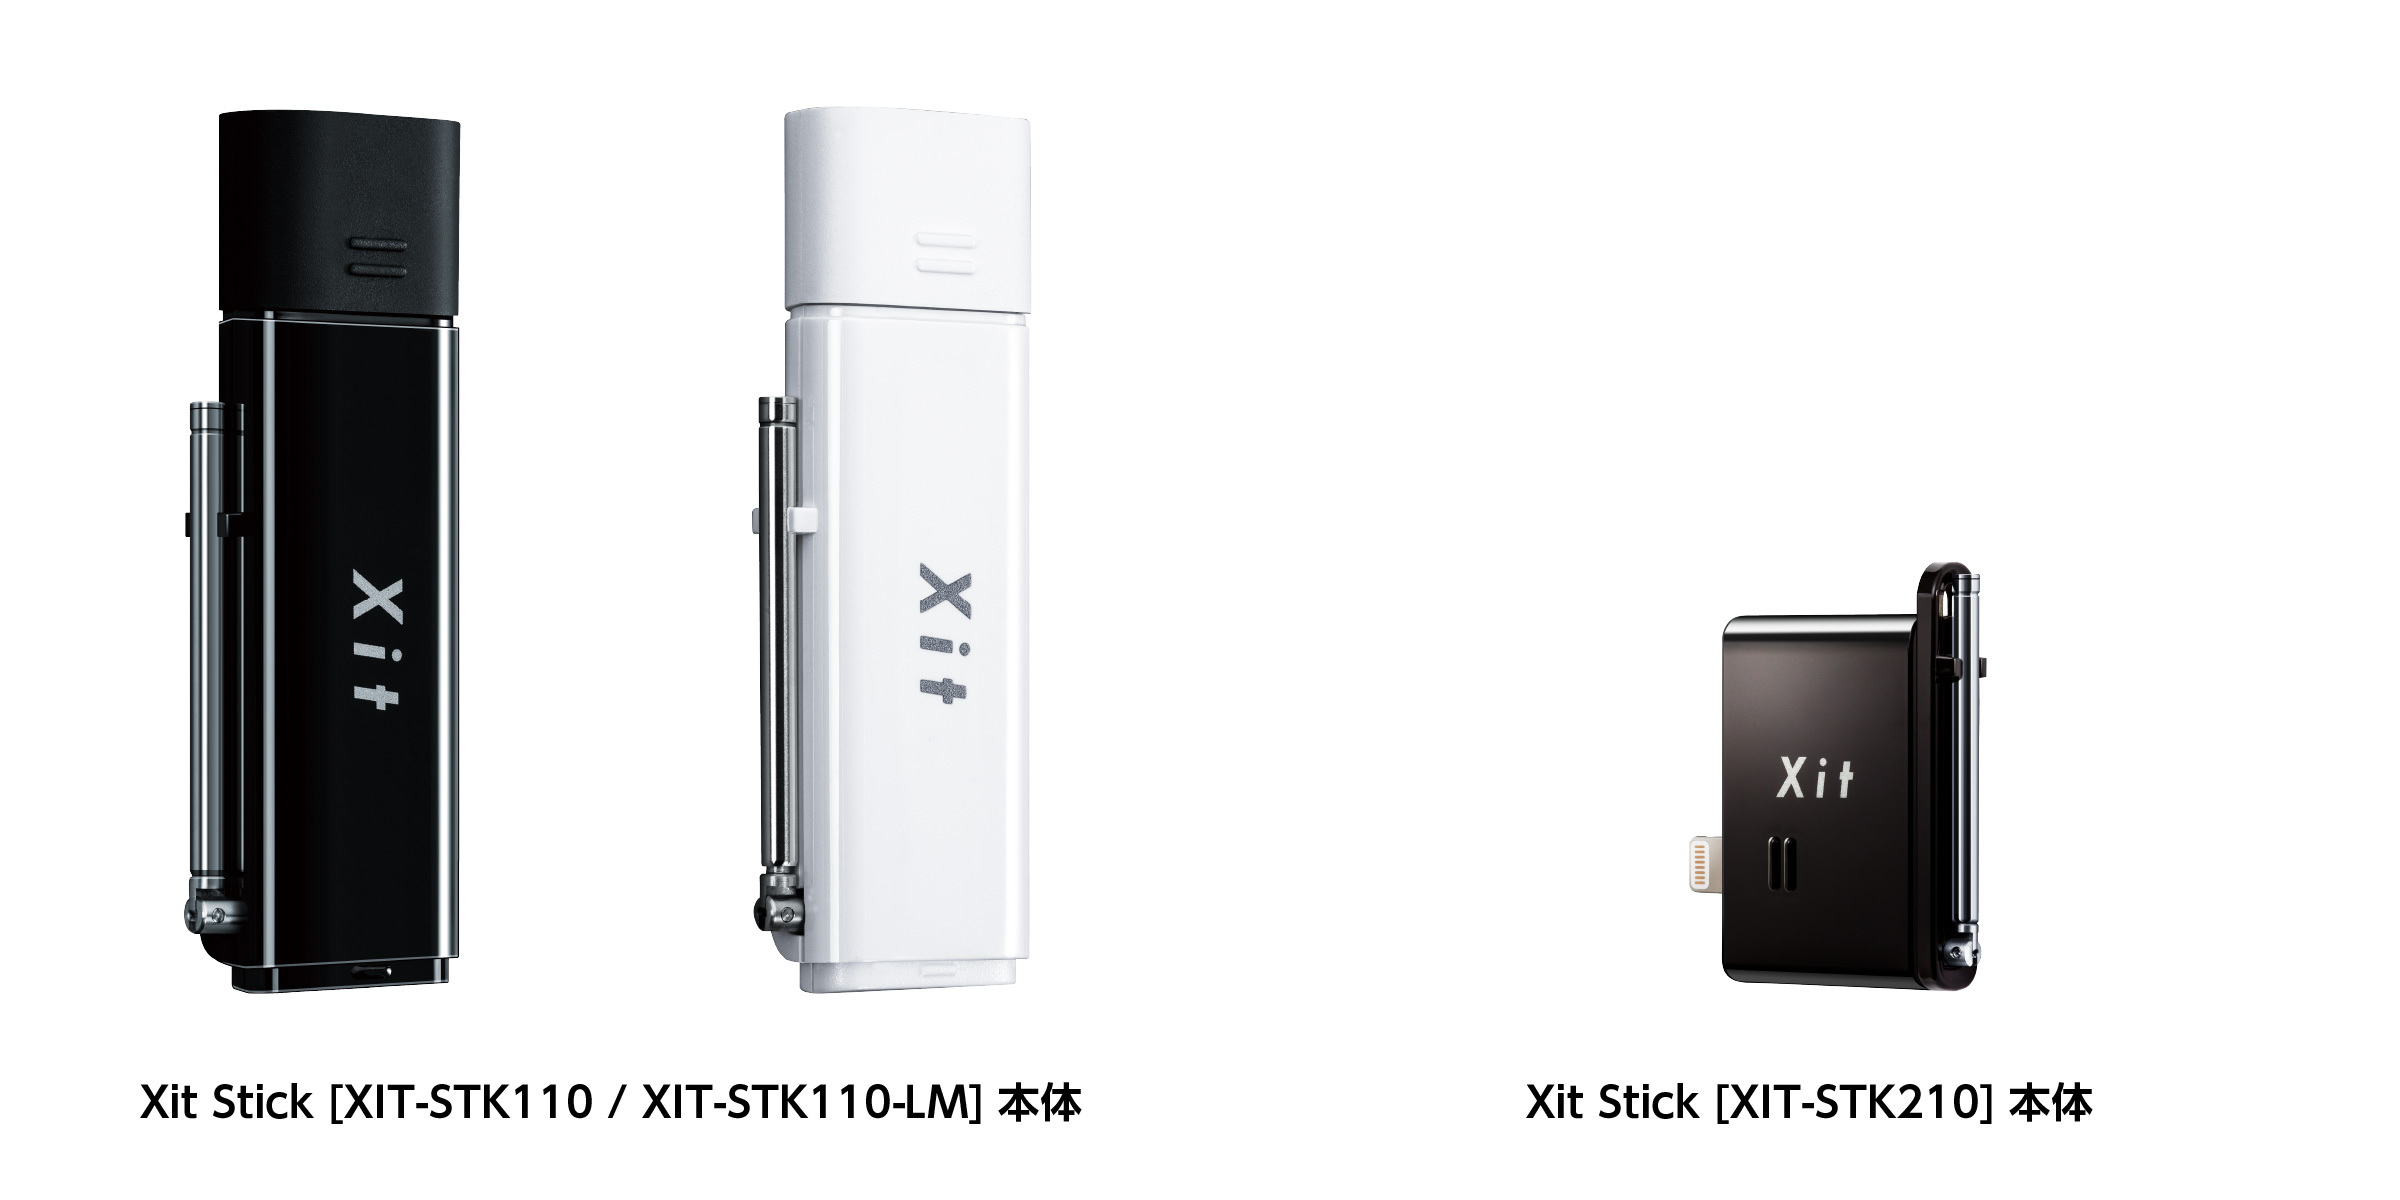 Xit Stick Xit-STK210-